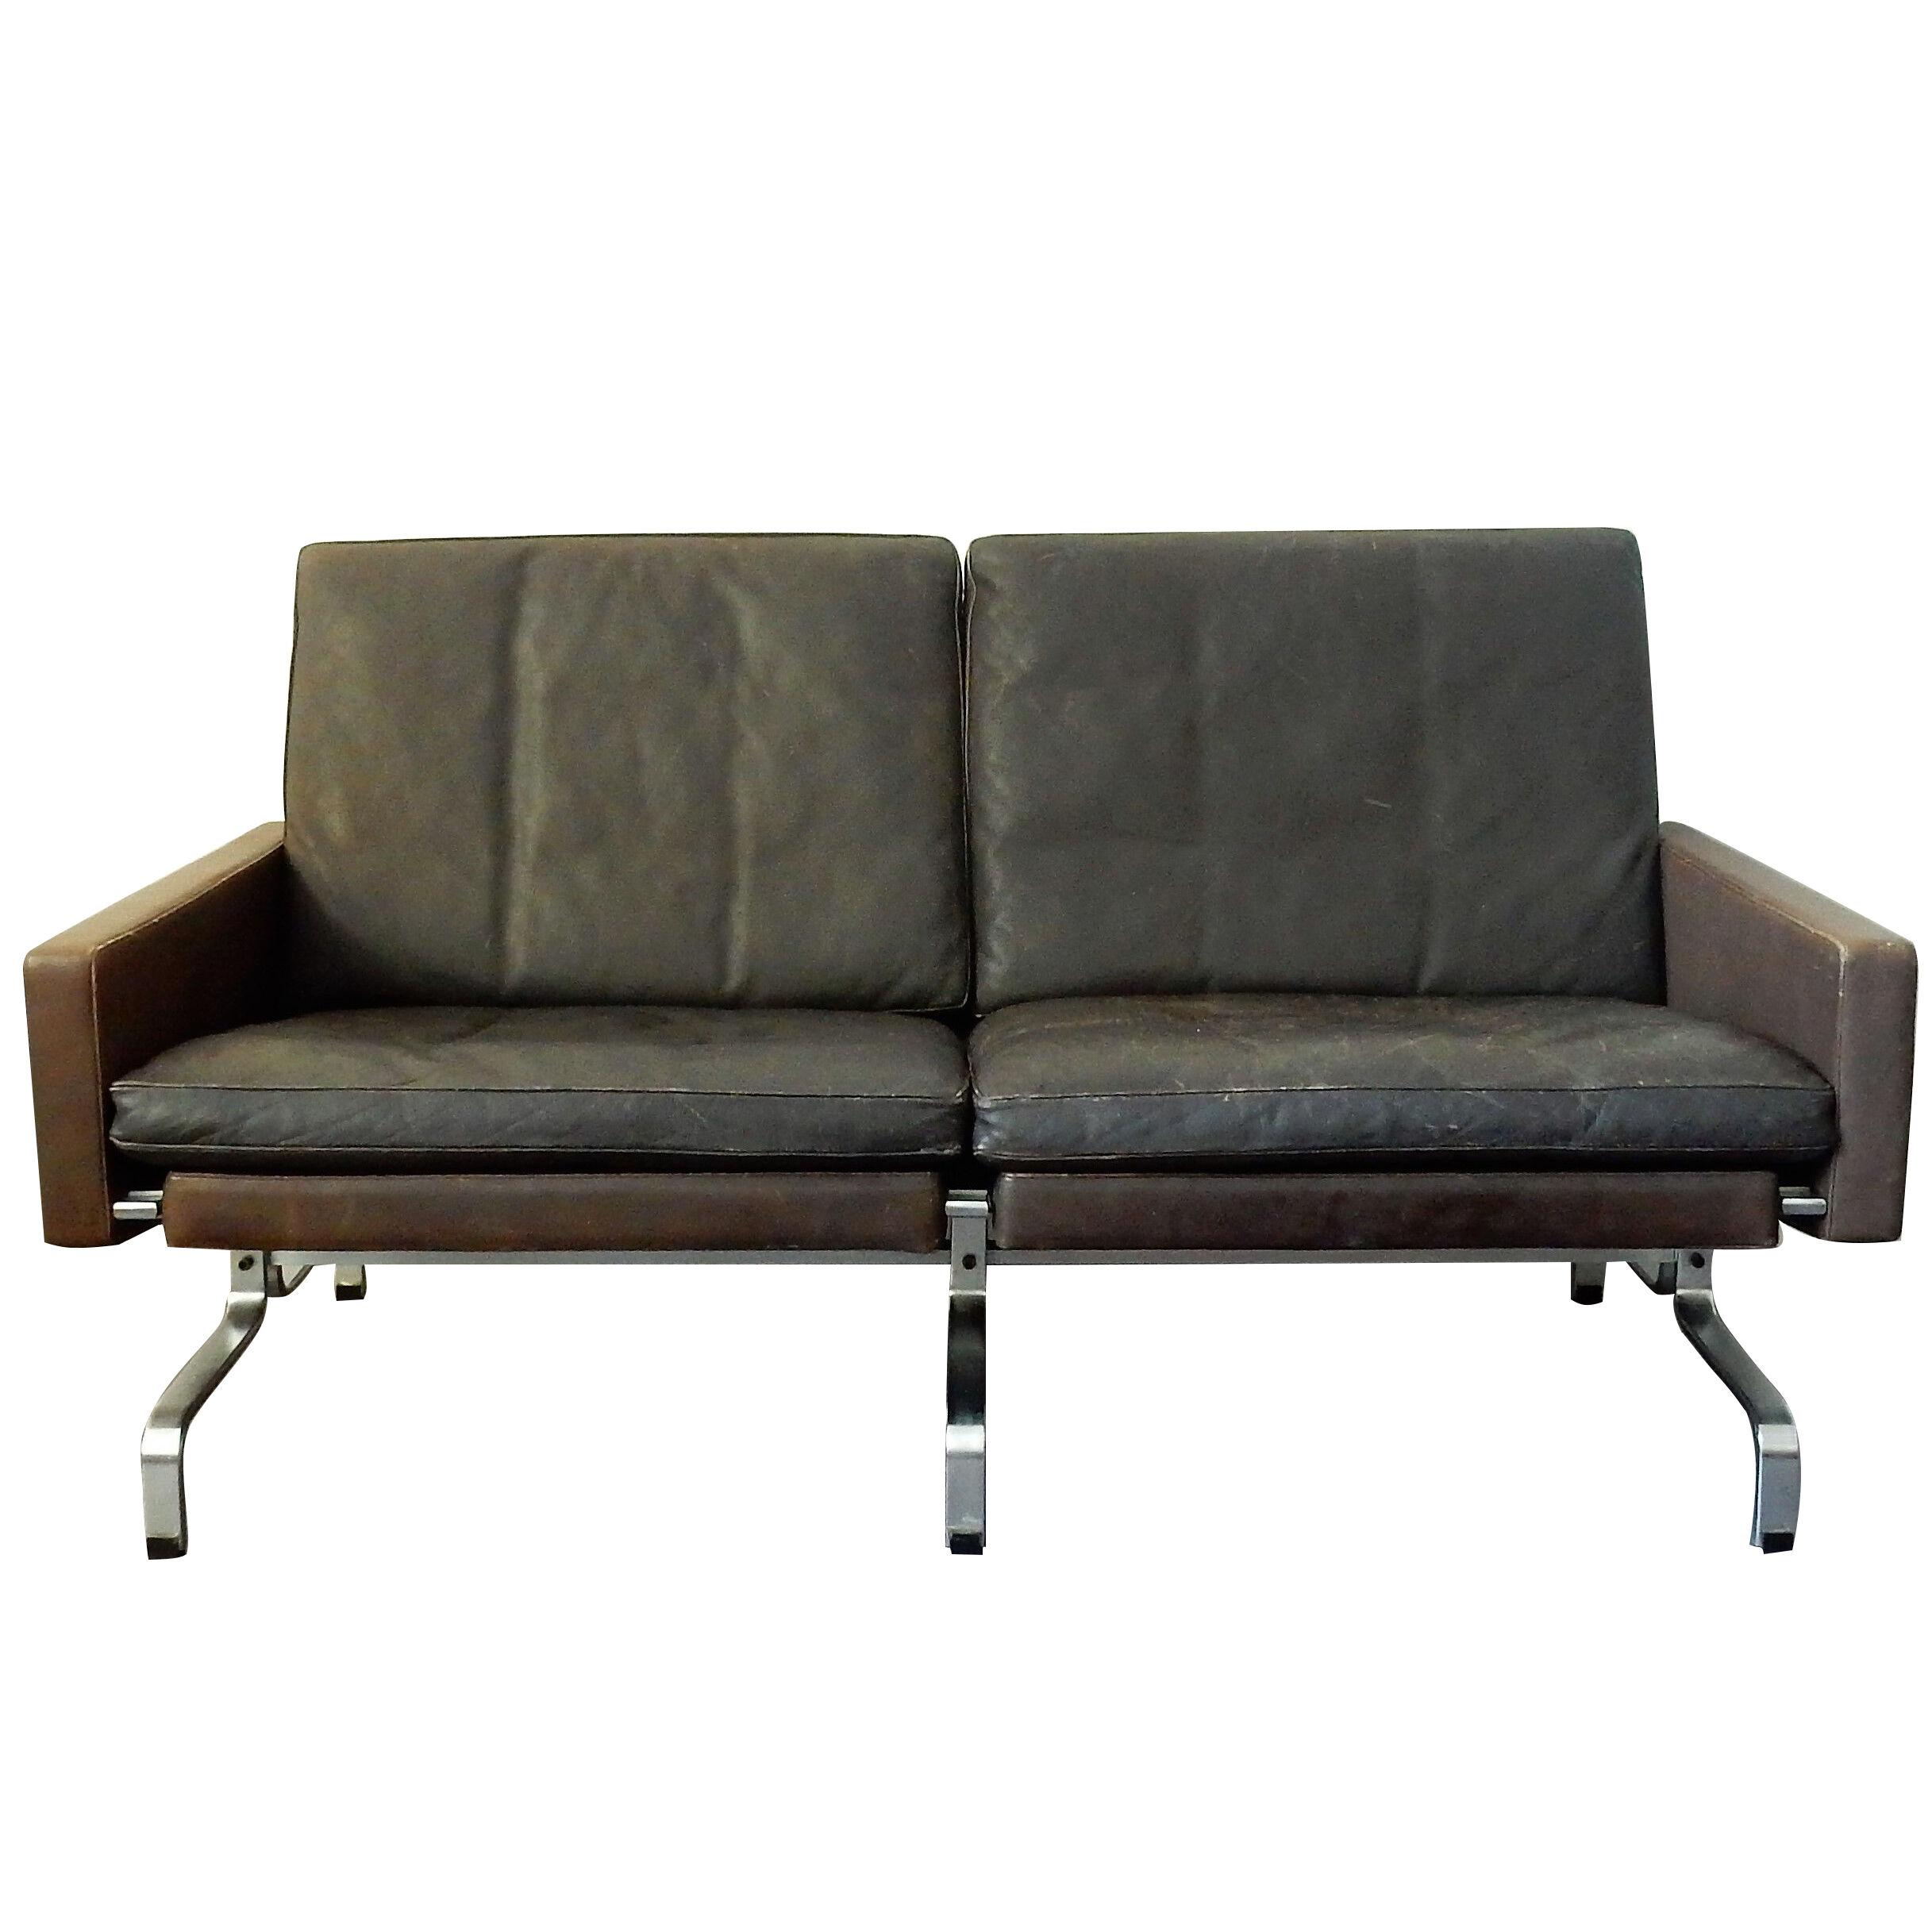 PK-31/2 leather sofa by Poul Kjaerholm for E. Kold Christensen, 1958 Denmark